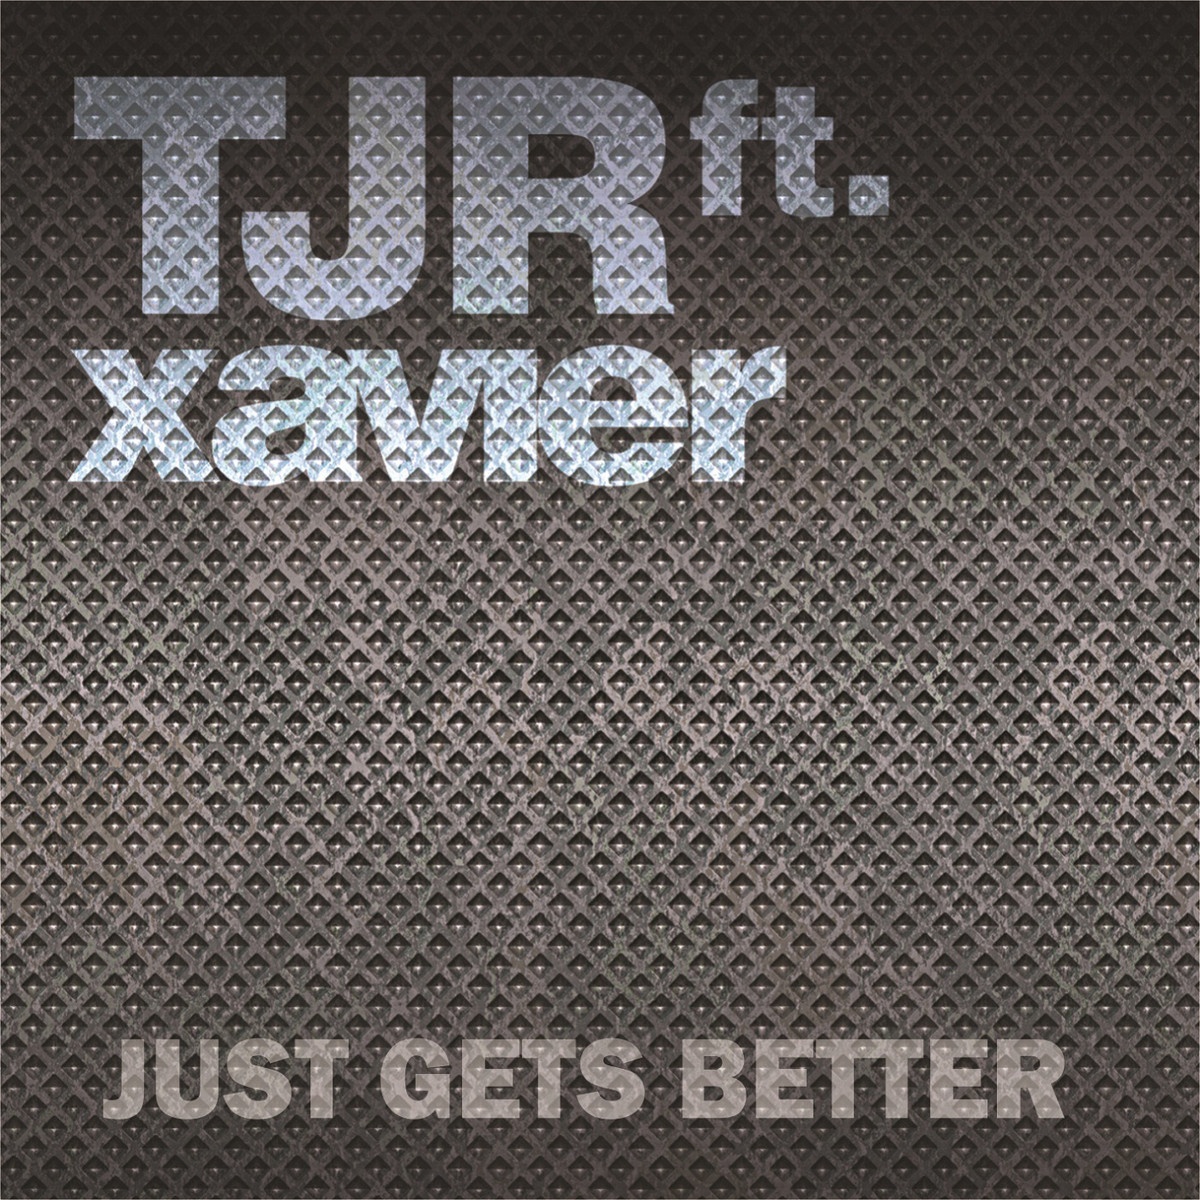 Just Gets Better (TJR Dub Radio Edit)